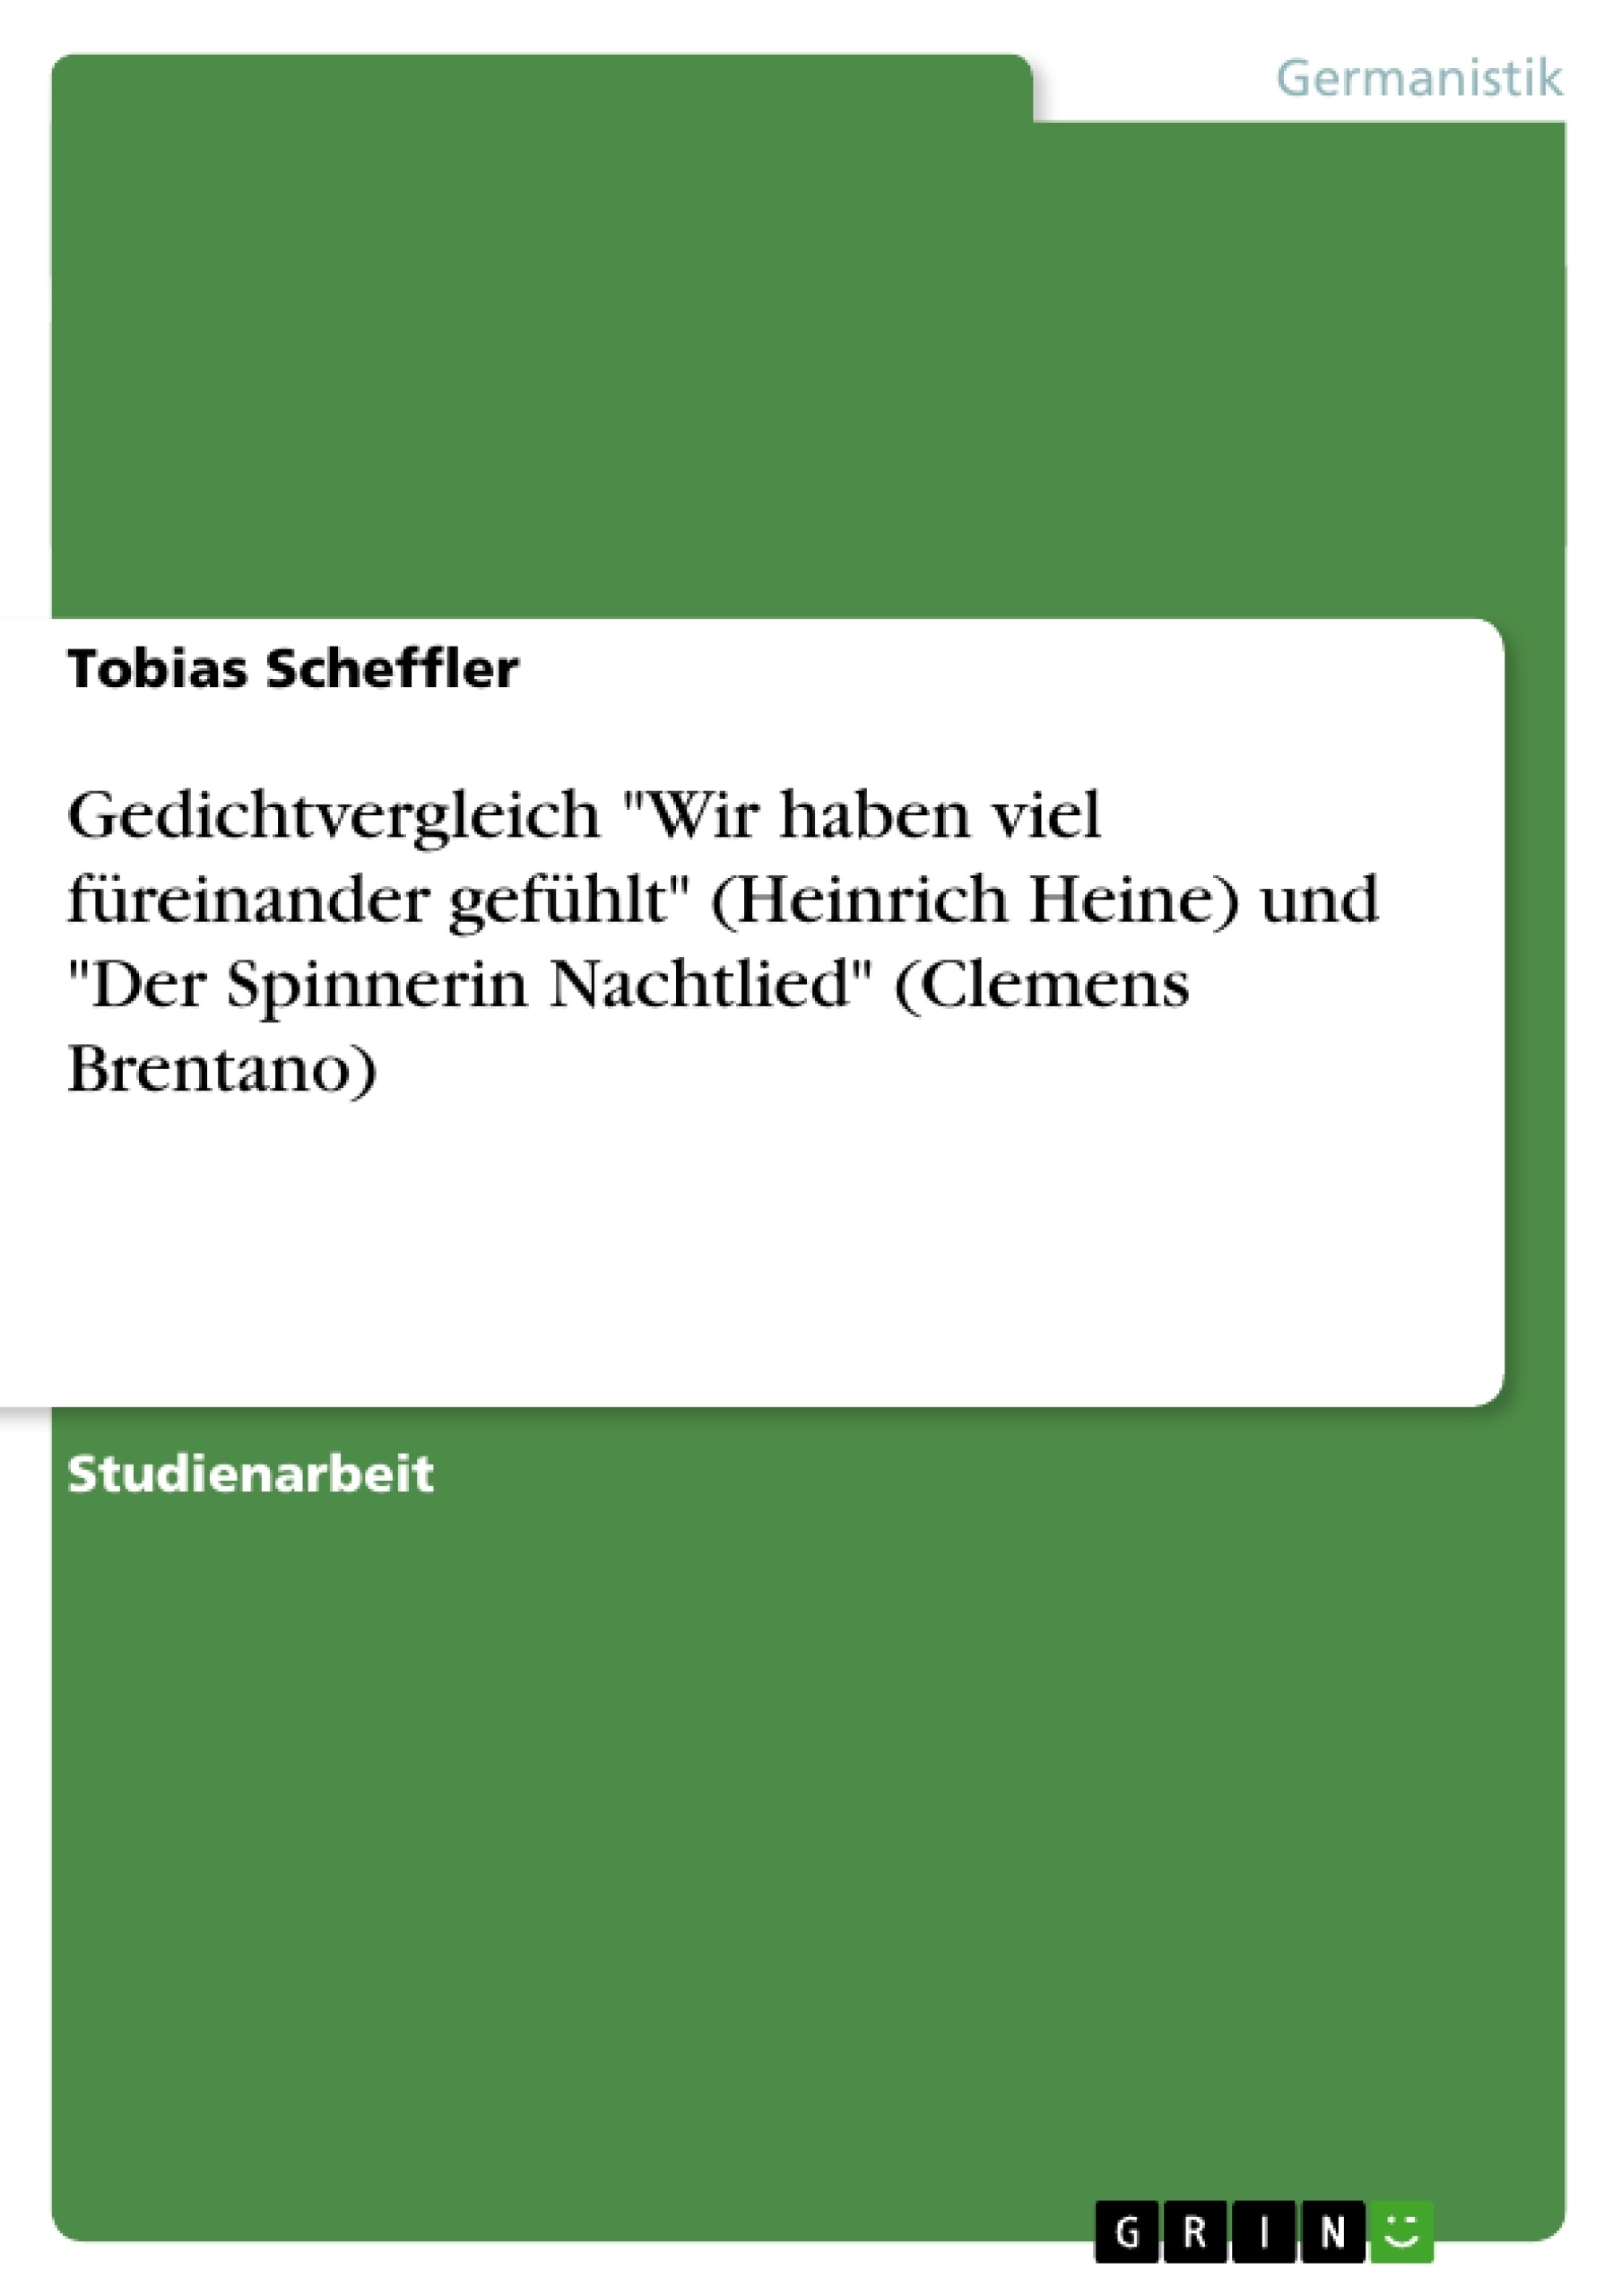 Título: Gedichtvergleich "Wir haben viel füreinander gefühlt" (Heinrich Heine) und "Der Spinnerin Nachtlied" (Clemens Brentano)